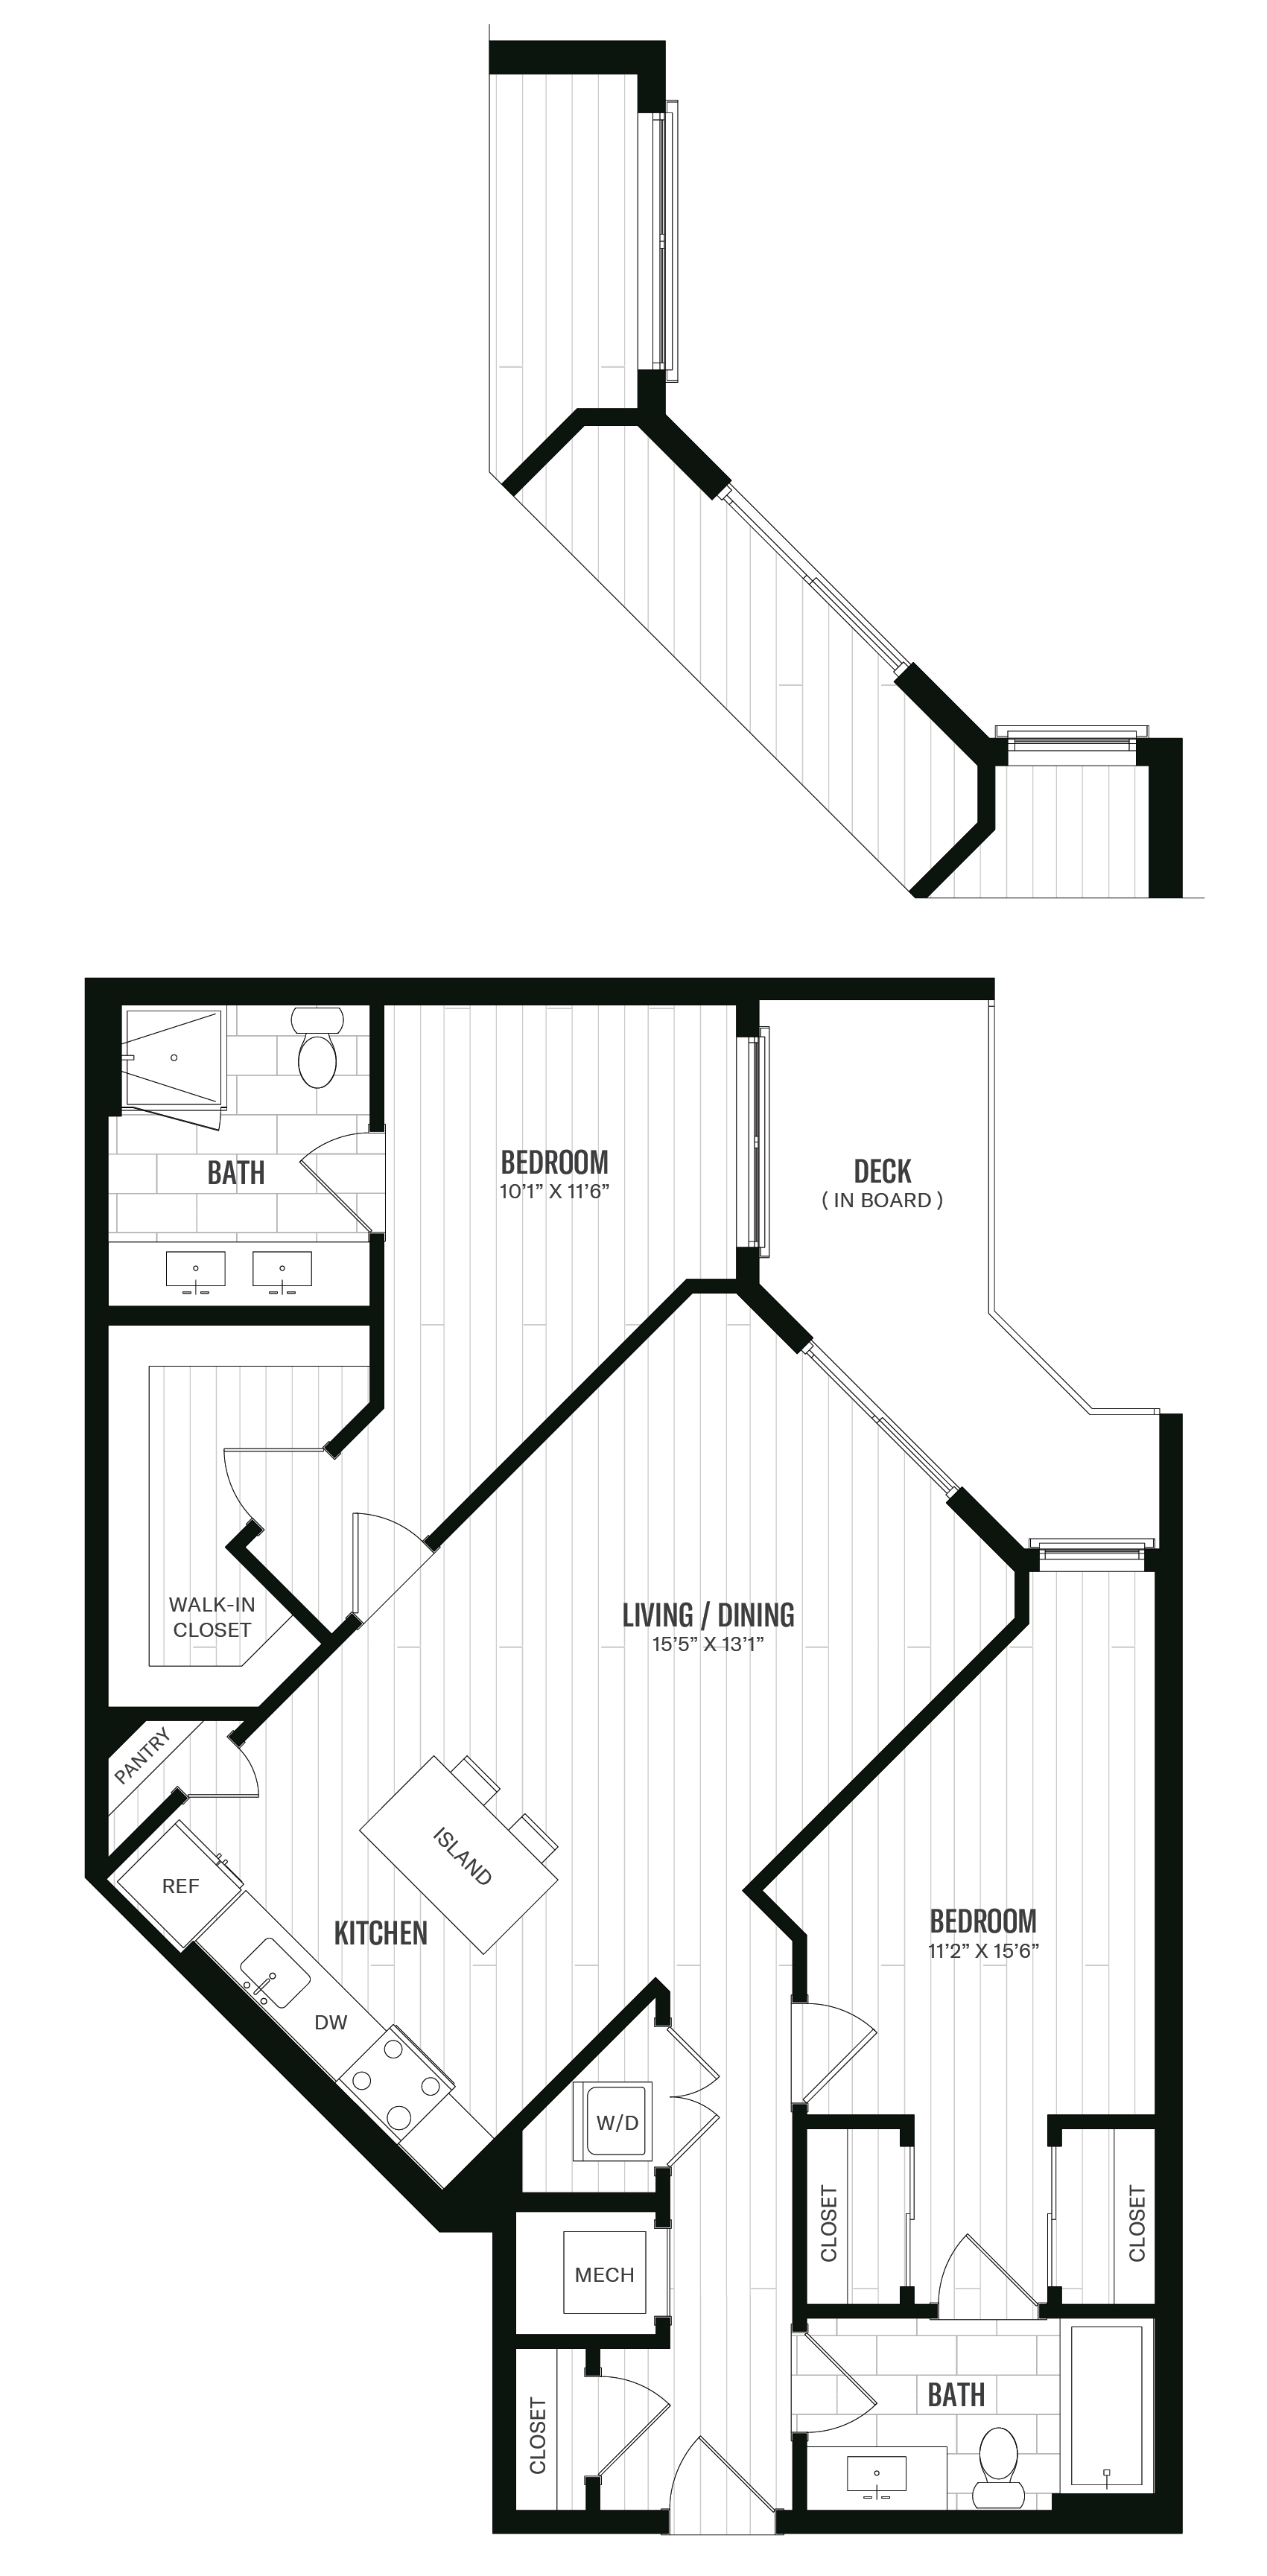 Floorplan image of unit 403